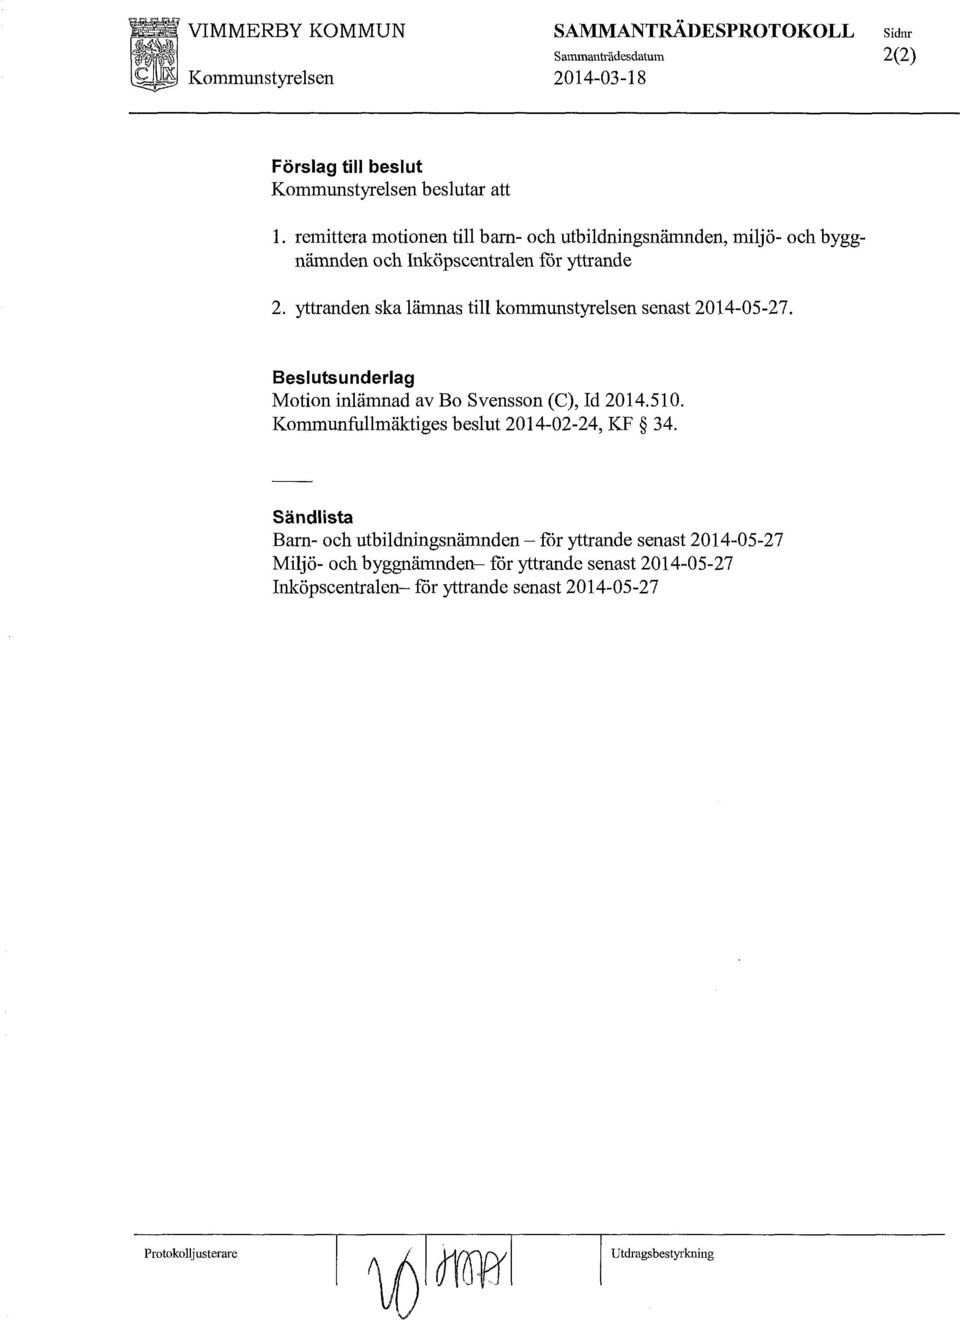 yttranden ska lämnas till kommunstyrelsen senast 2014-05-27. Motion inlämnad av Bo Svensson (C), Id 2014.510.